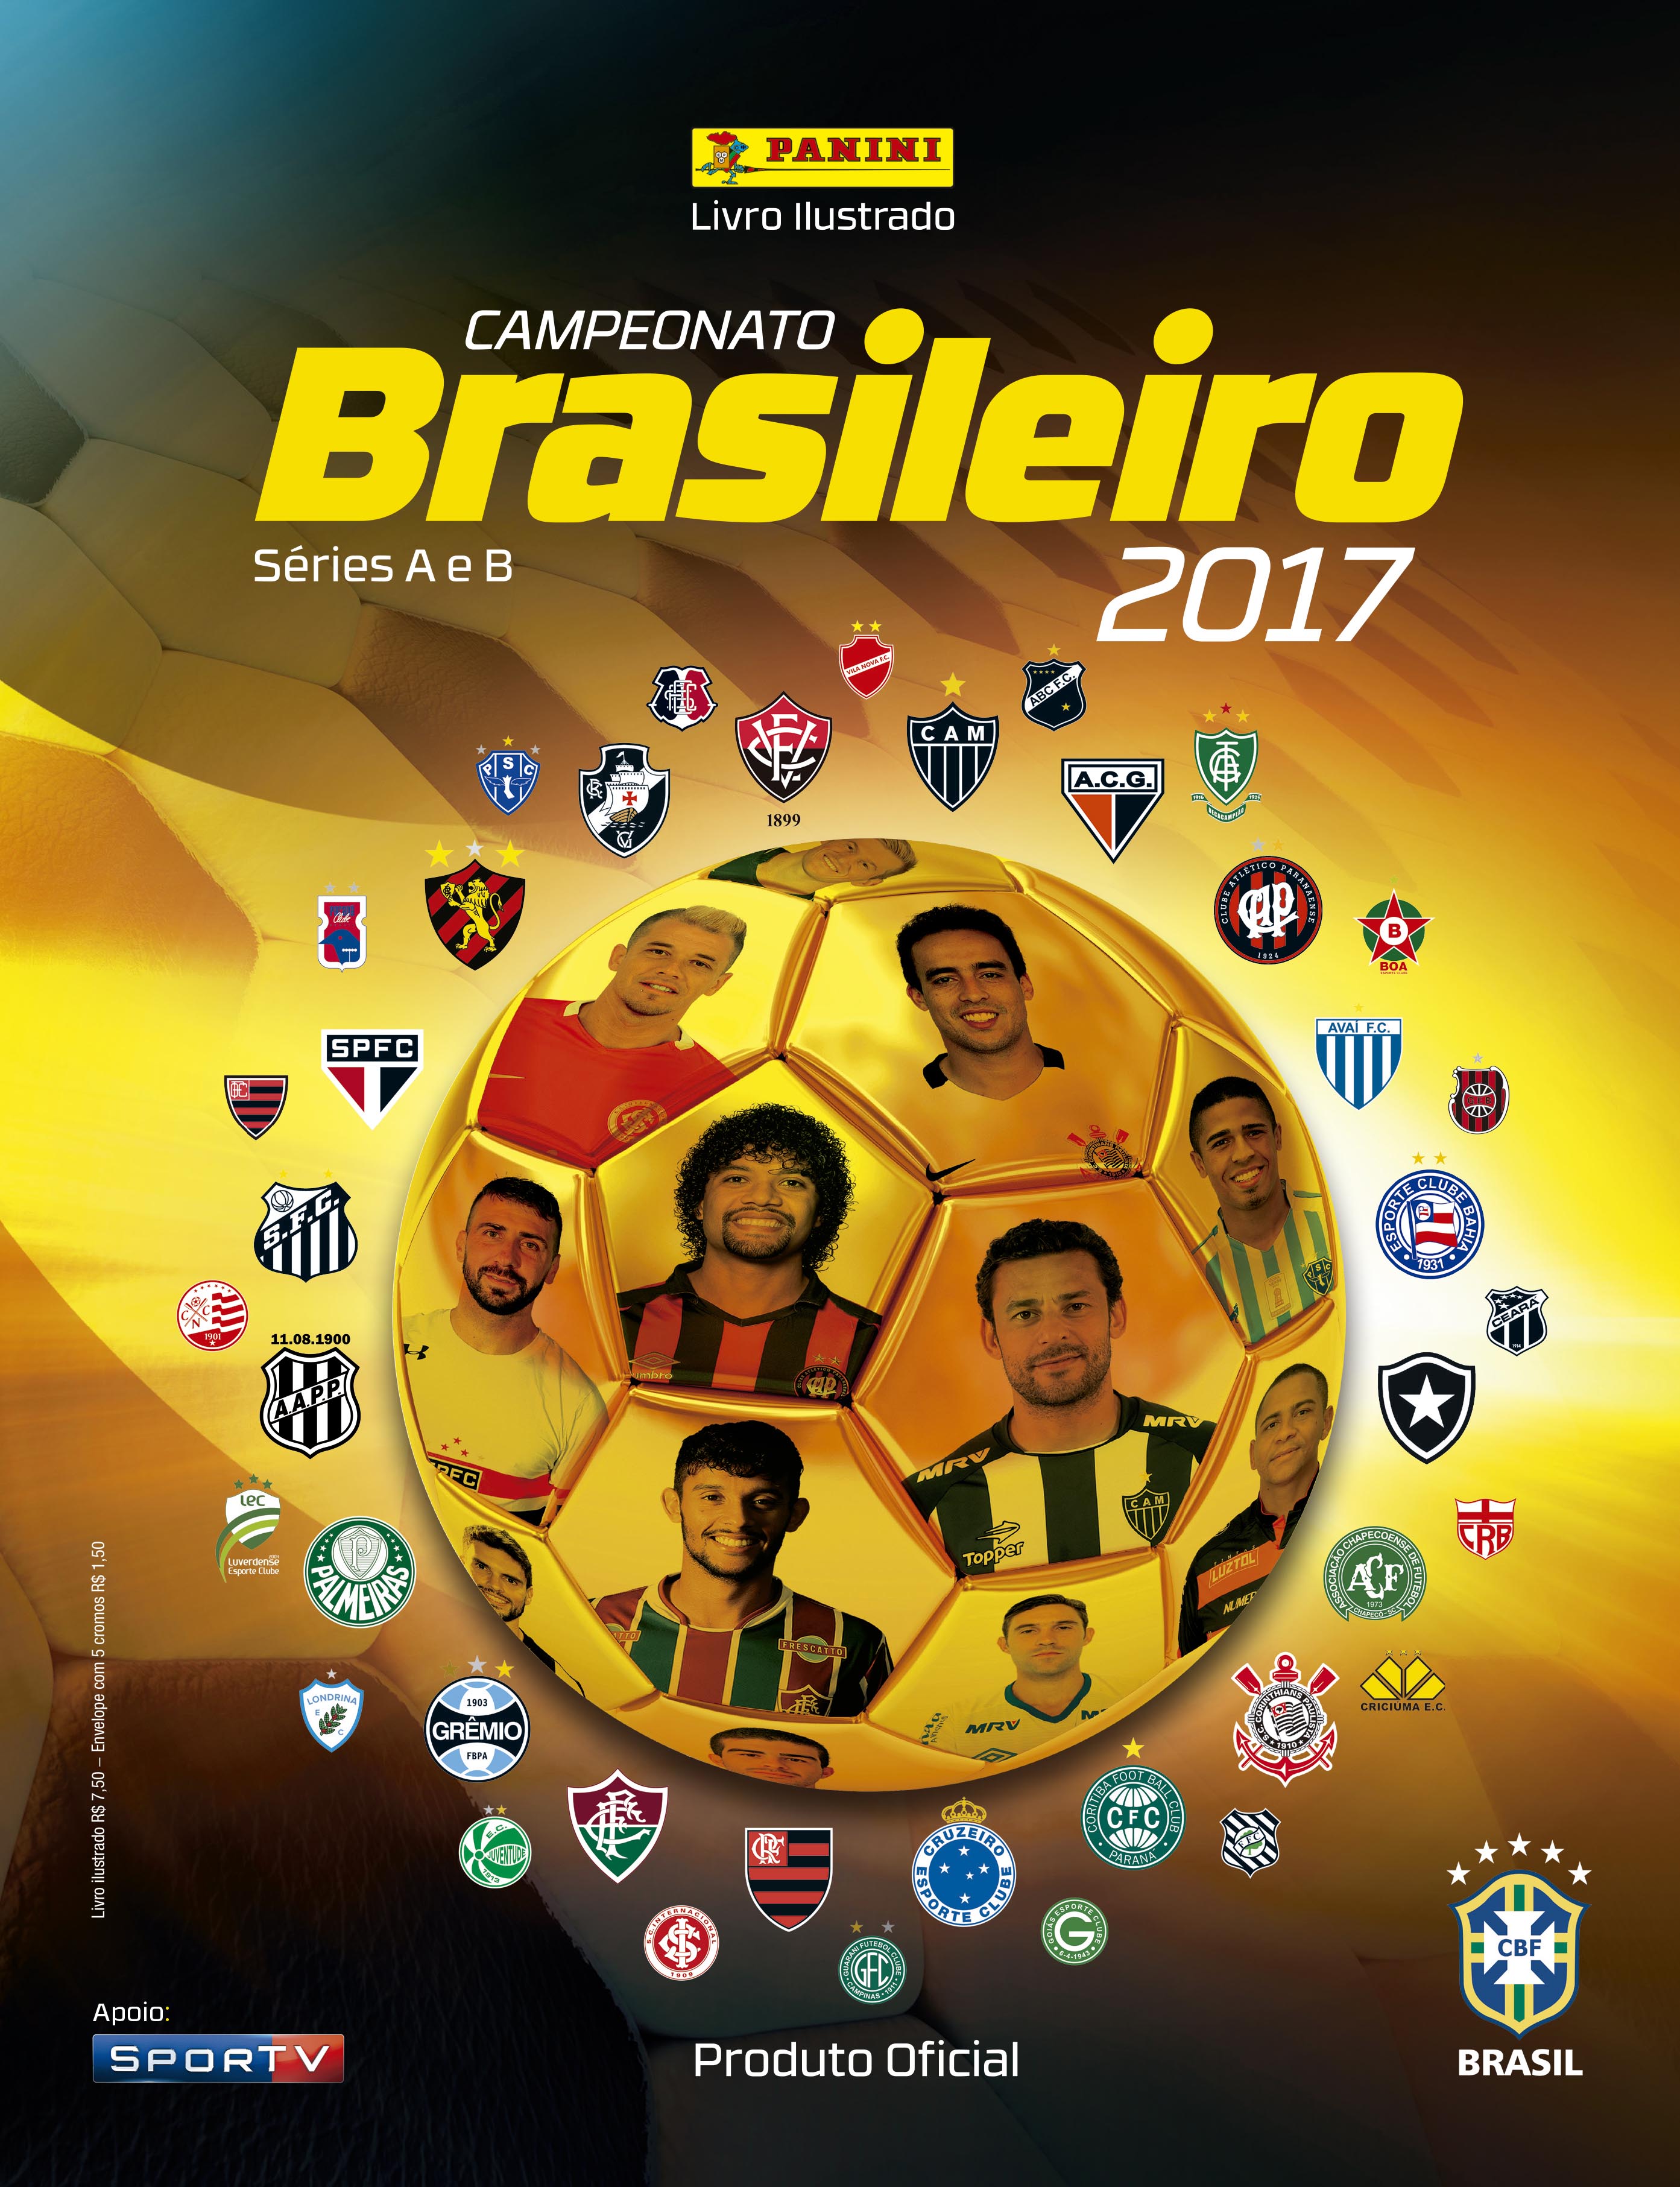 Almanaque do Vasco: fichas técnicascompletas de todos os jogos do Vasco, de  1916 até abril 2019 (conquista da Taça Guanabara)